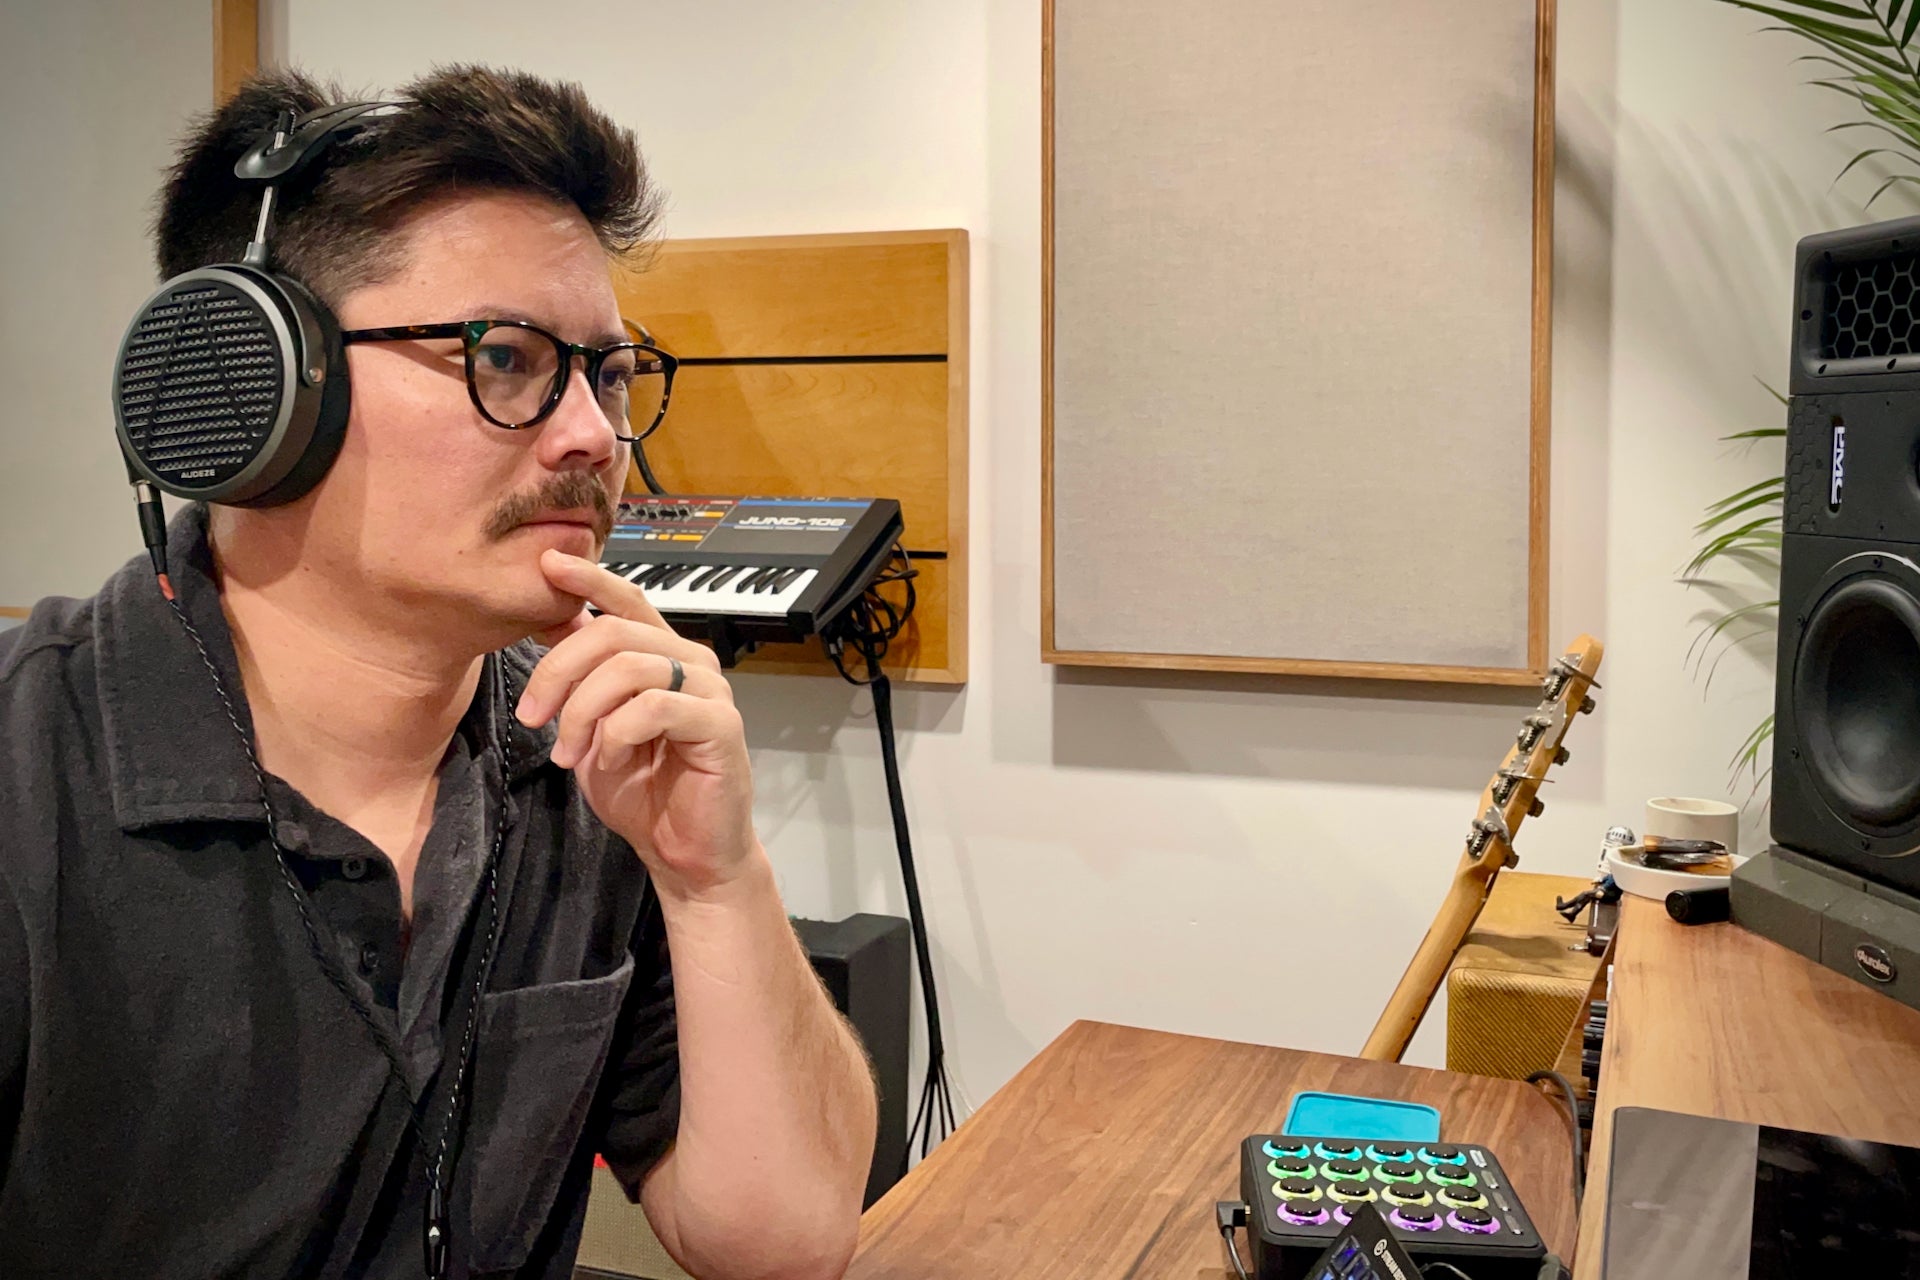 Jeff Owen in the studio with his Audeze MM-500 headphones